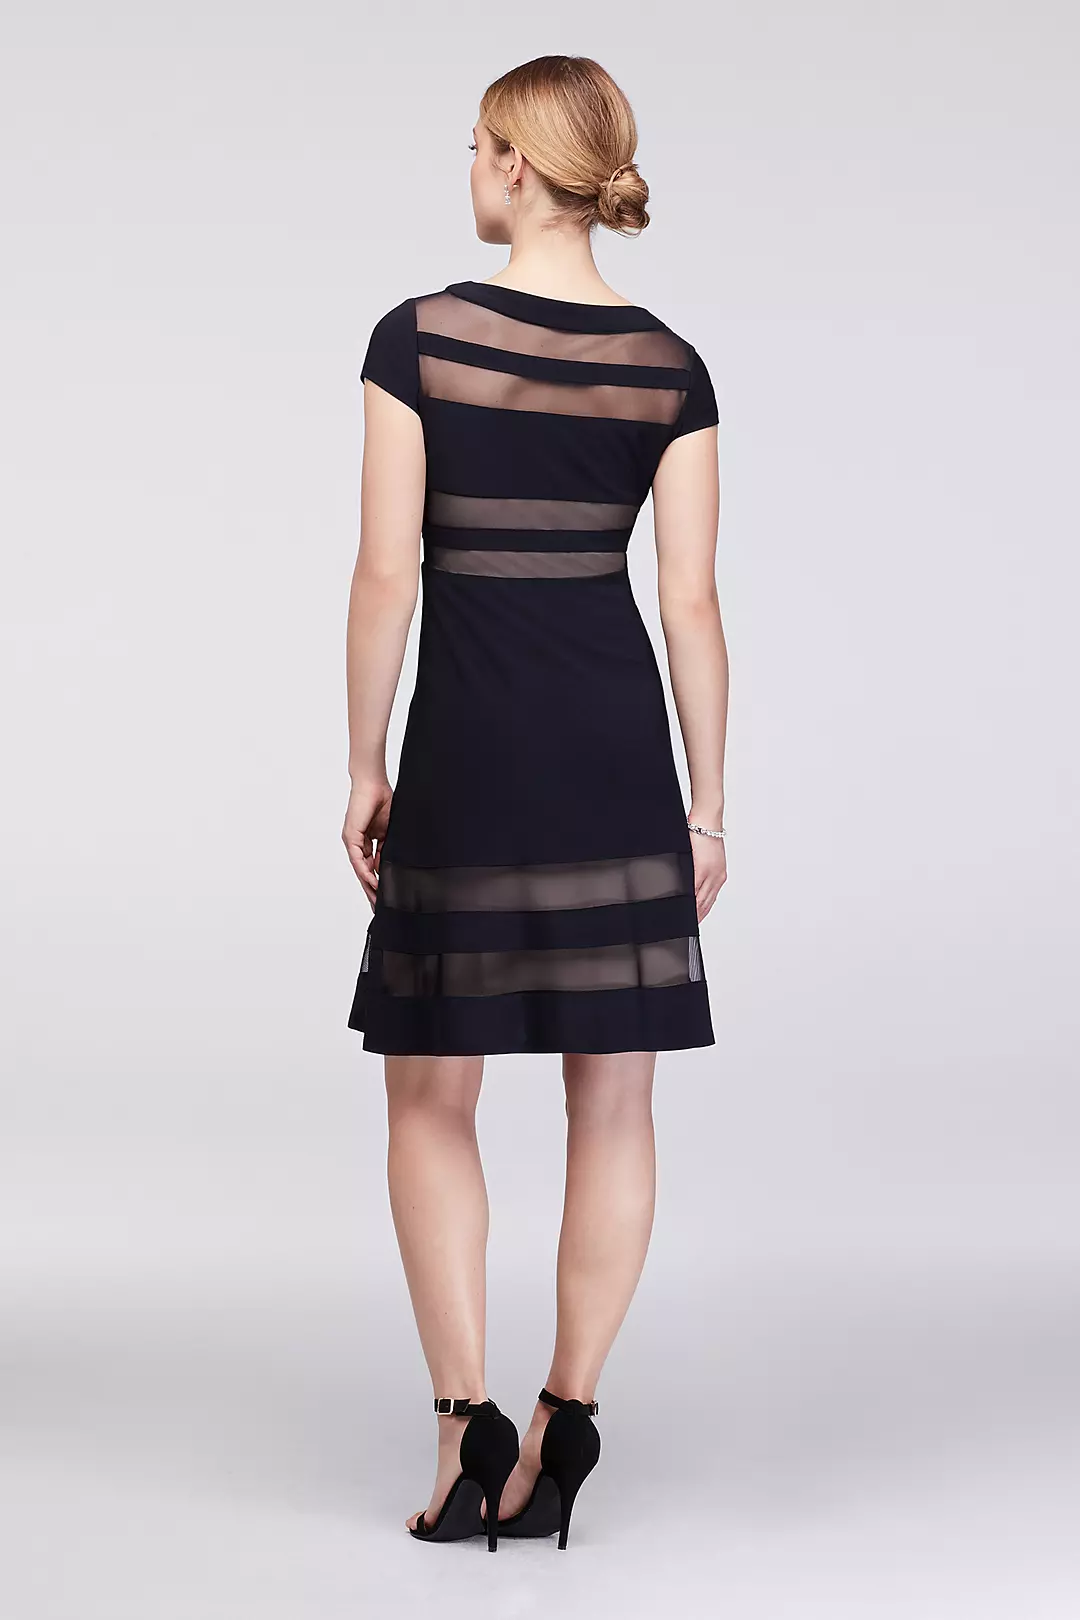 Faux-Illusion Stripe A-Line Short Dress Image 2